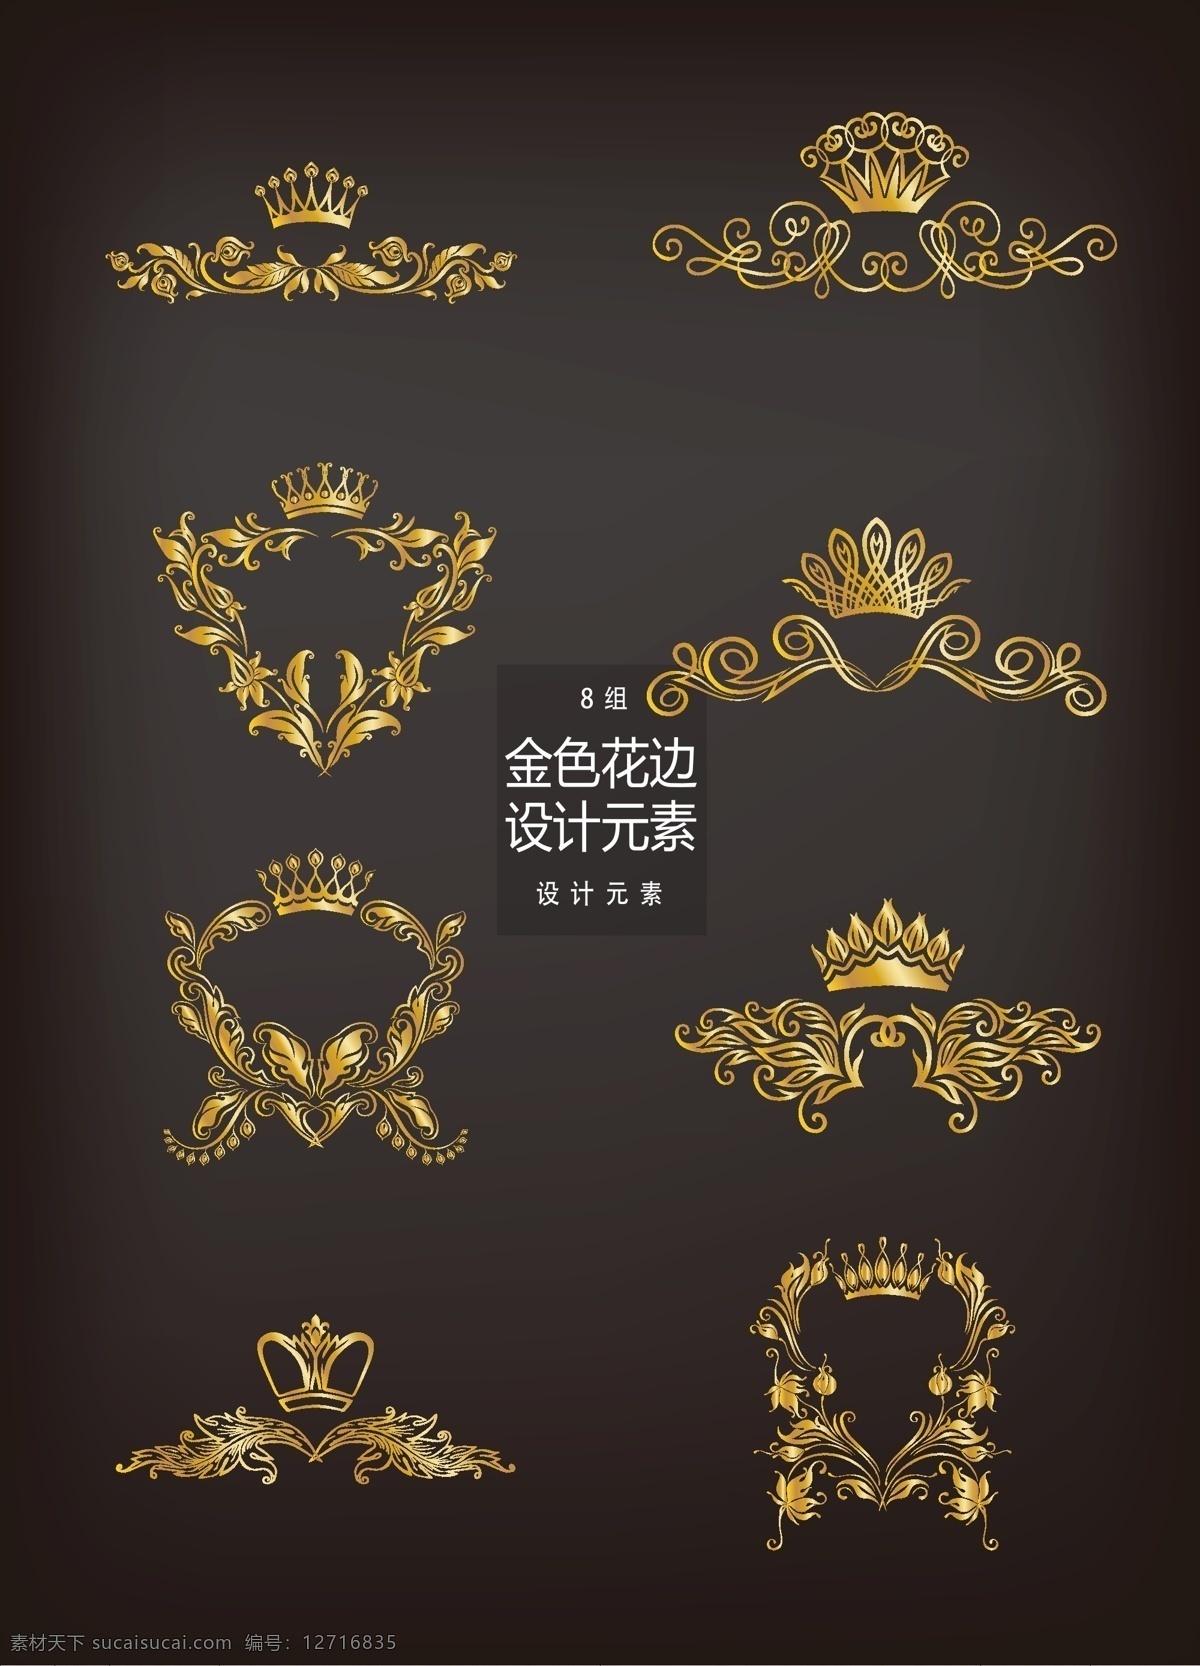 金色 皇冠 花边 装饰 图案 元素 设计元素 金色花边 金色花纹 手绘花纹 装饰图案 金色皇冠 花纹设计